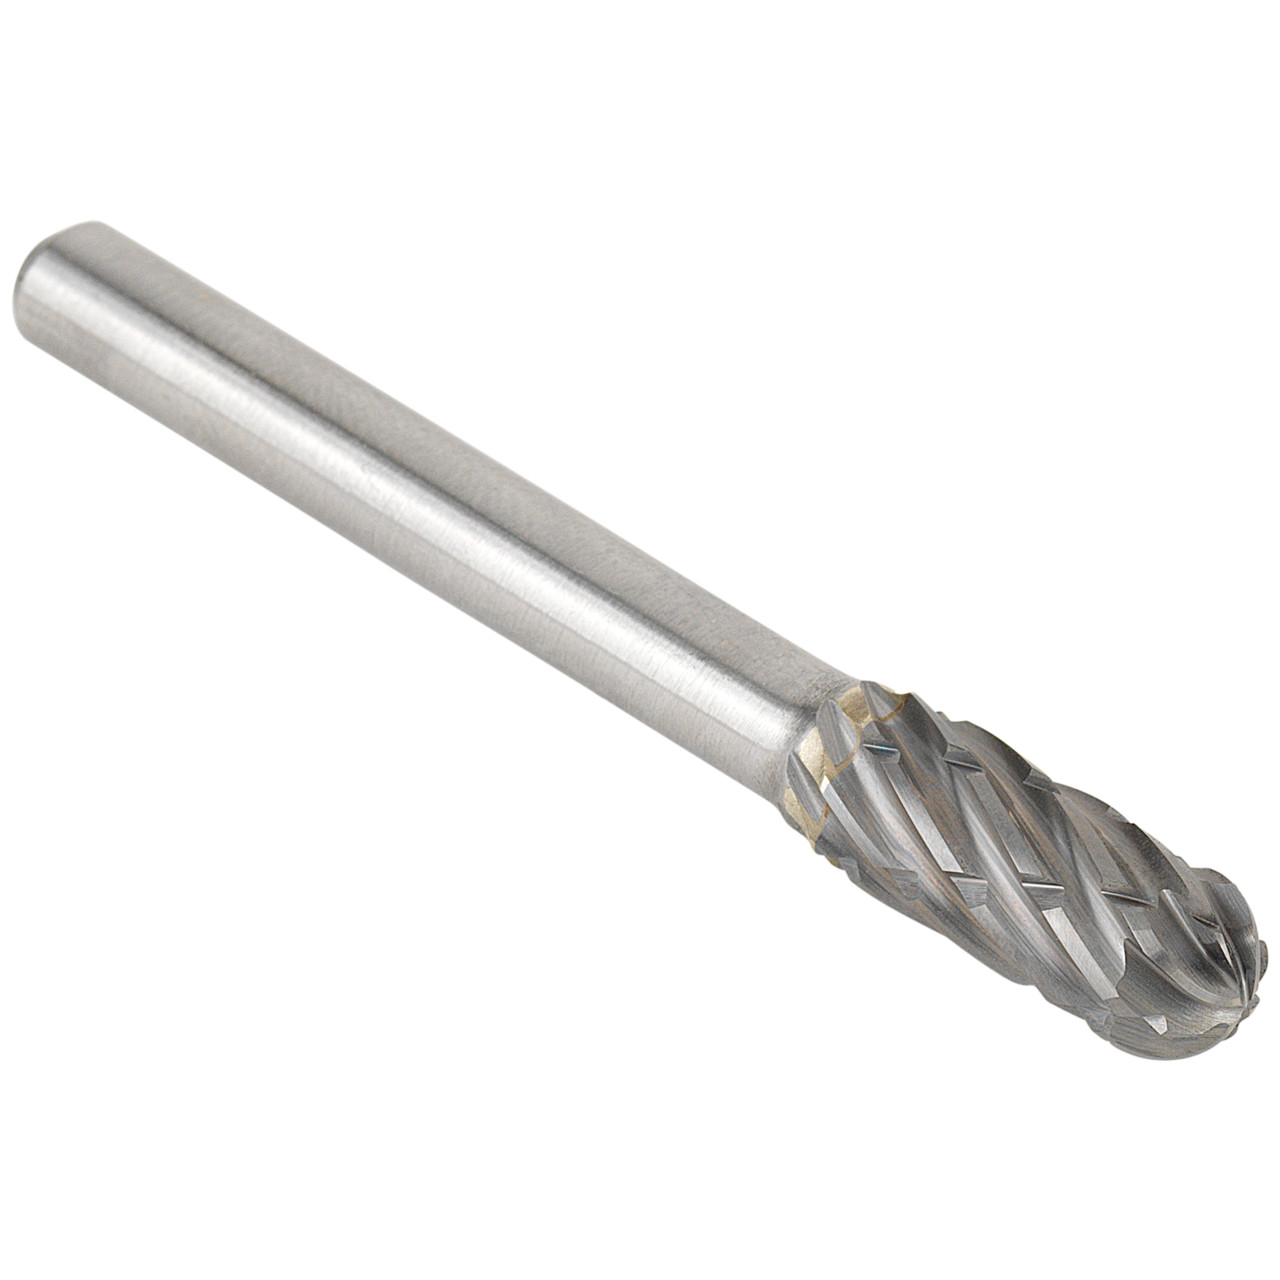 TYROLIT hardmetalen frees DxT-SxL 6x18-6x50 Voor staal, vorm: 52WRC - cilindrisch rond, Art. 34213581